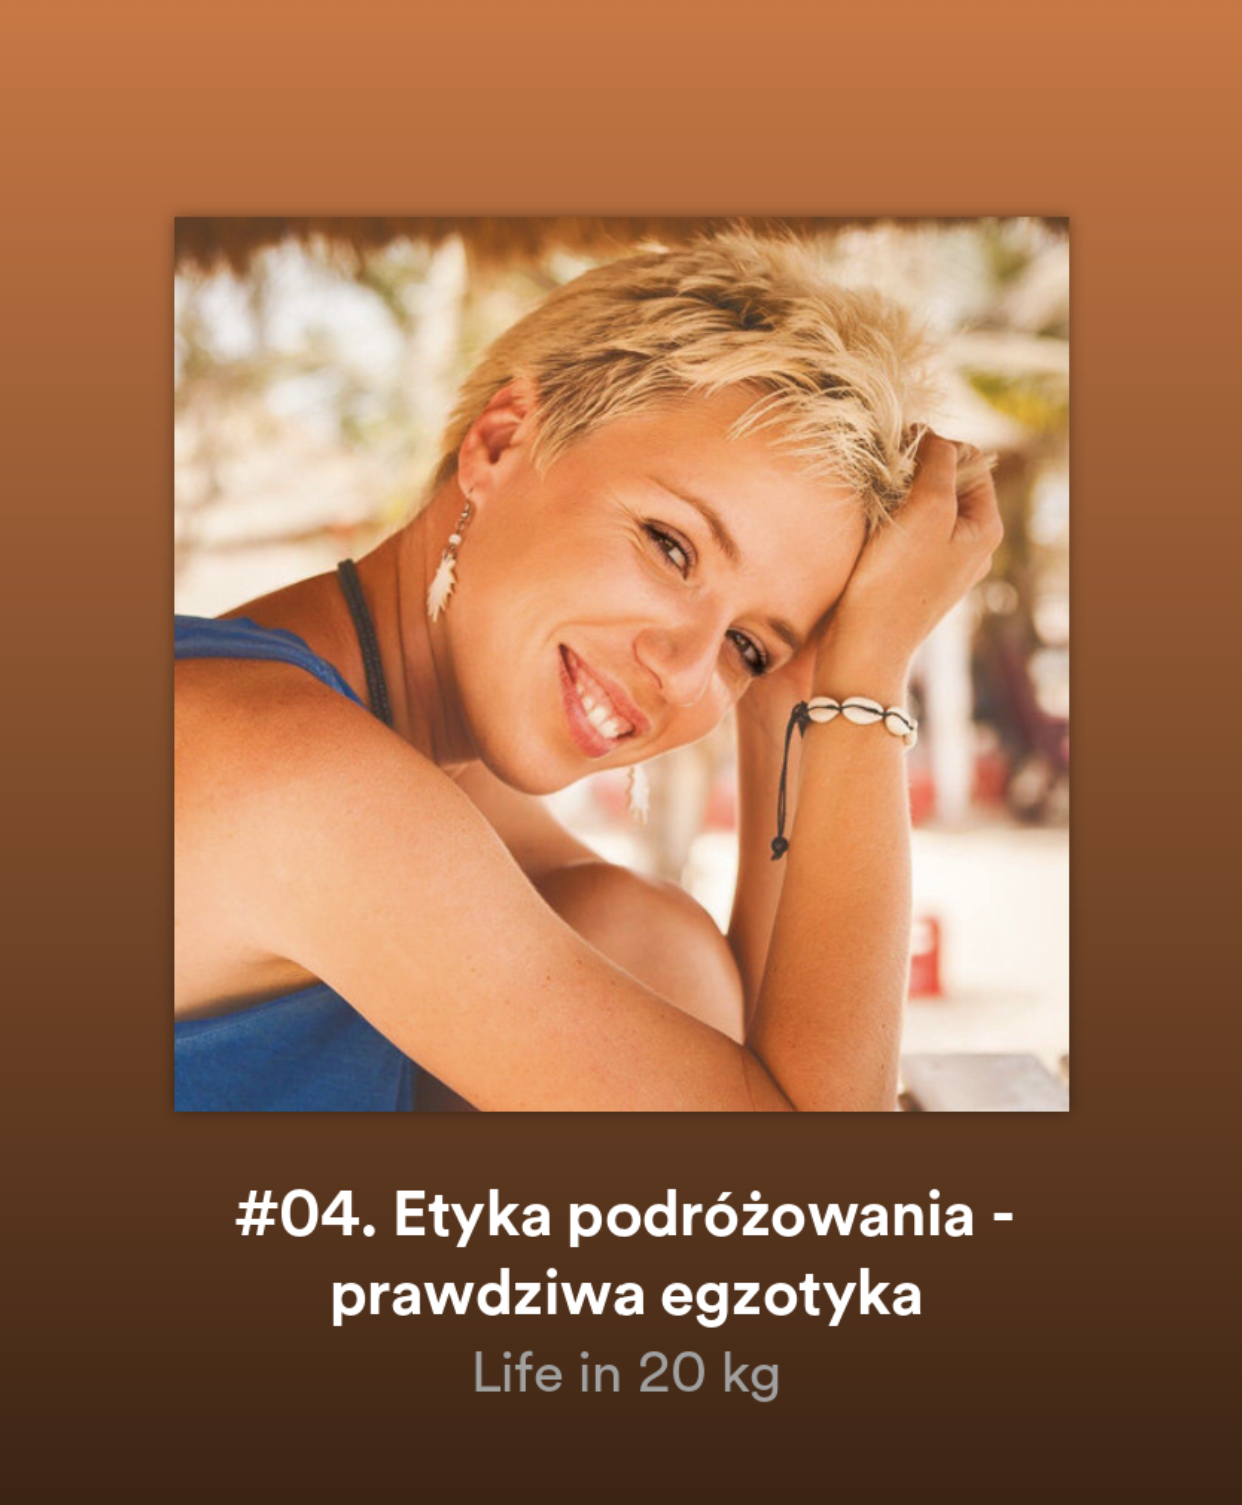 Podcast, Martyna Skura, Life in 20 kg, etyka podróżowania, odpowiedzialna turystyka, świadoma turystyka, 